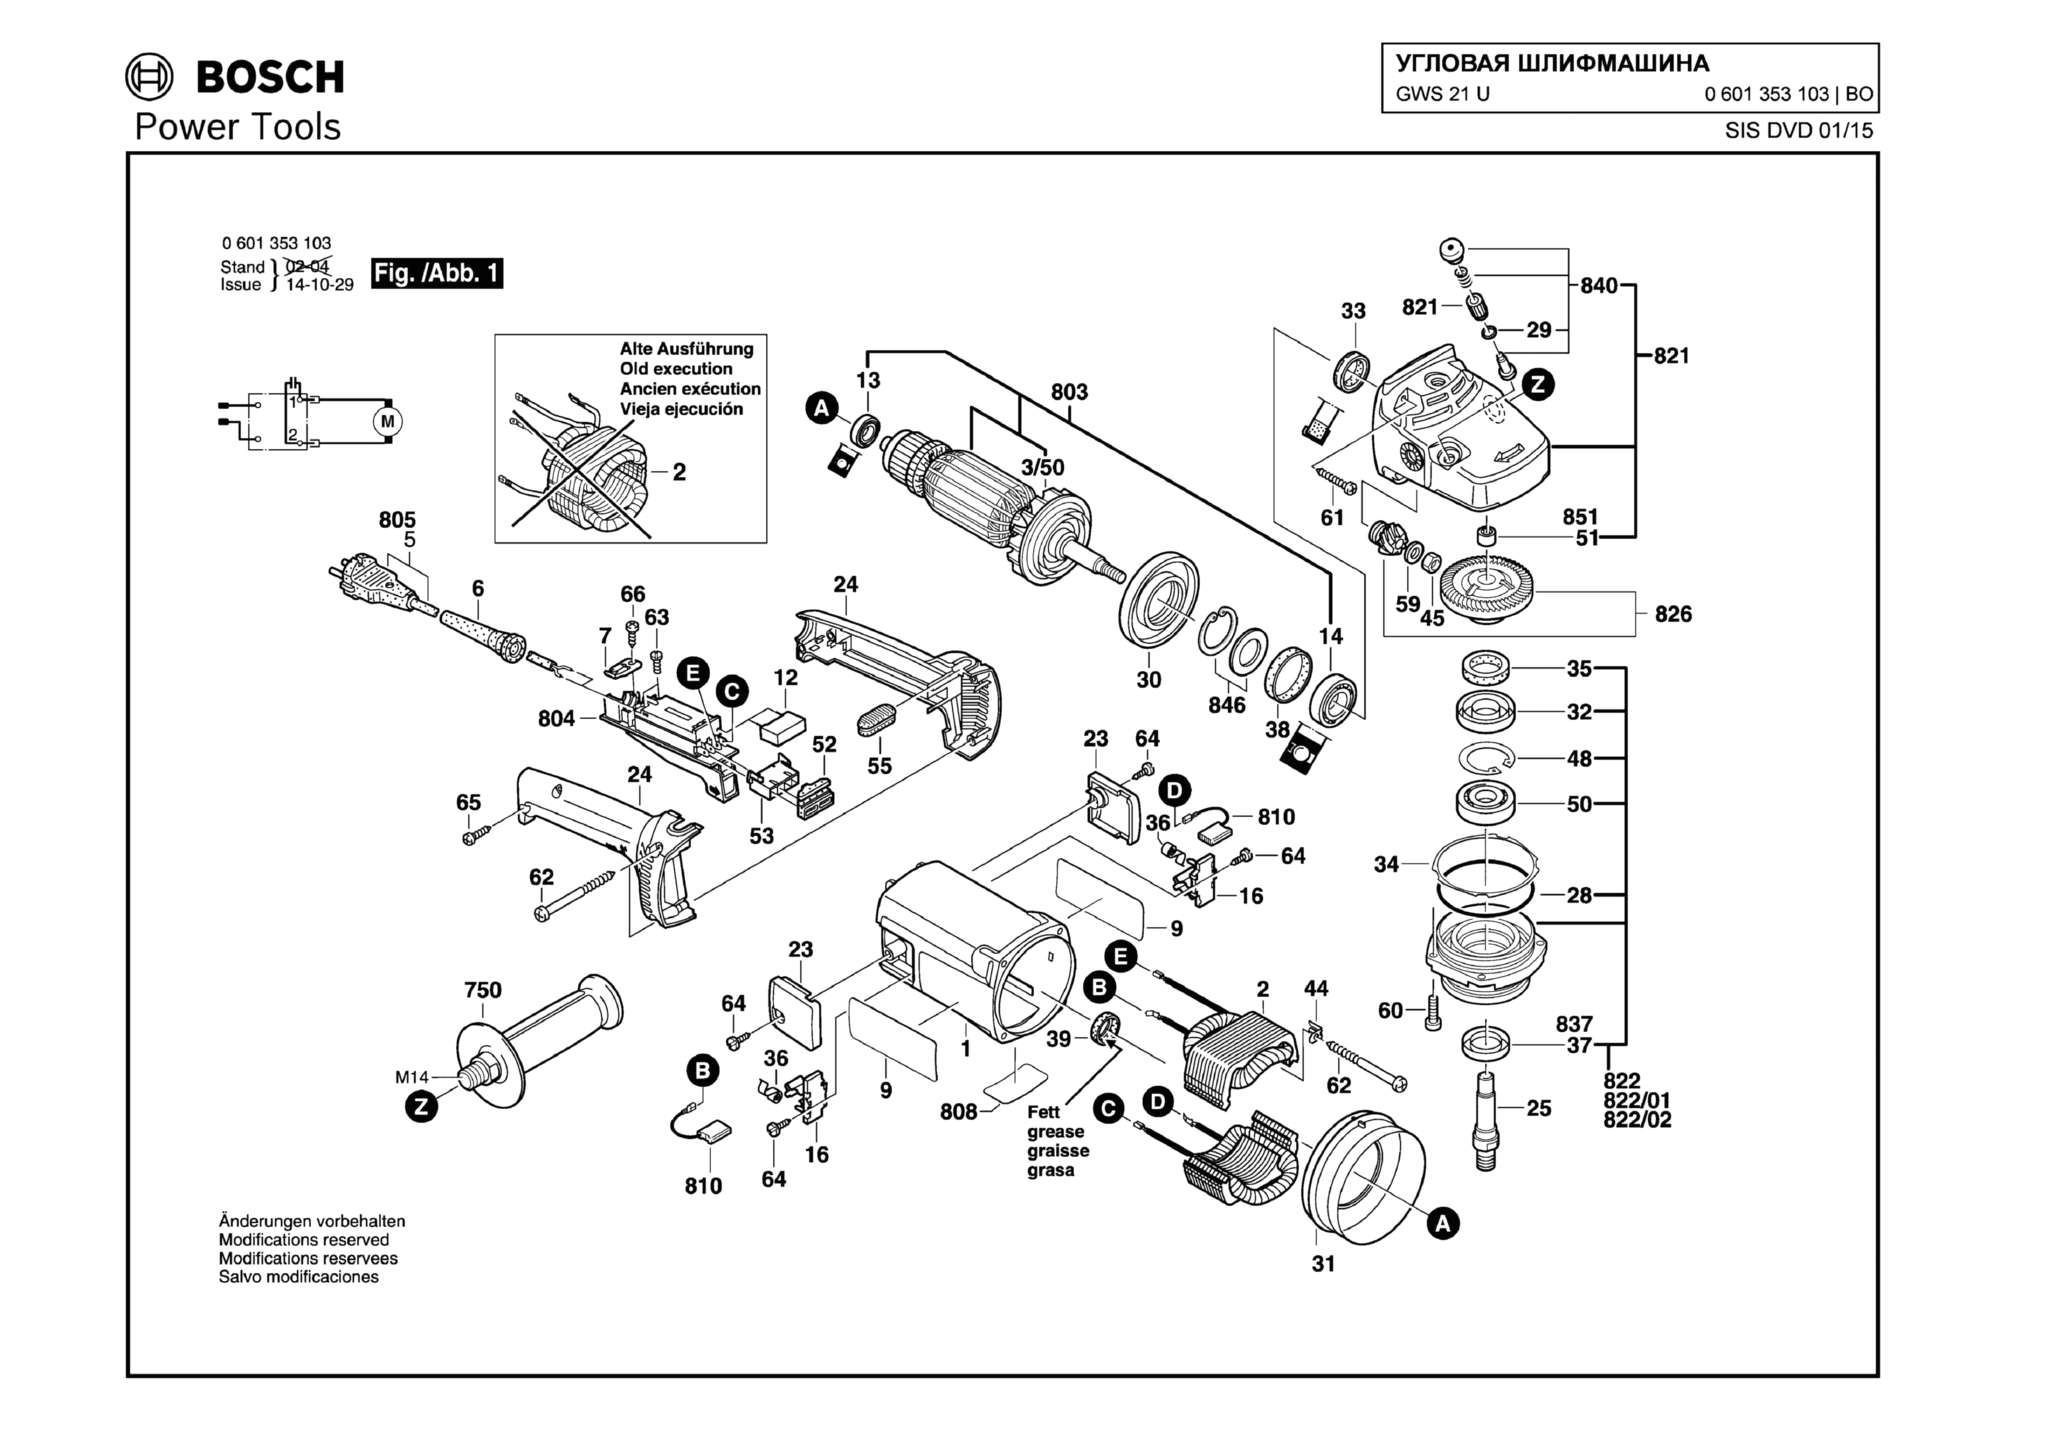 Запчасти, схема и деталировка Bosch GWS 21 U (ТИП 0601353103)